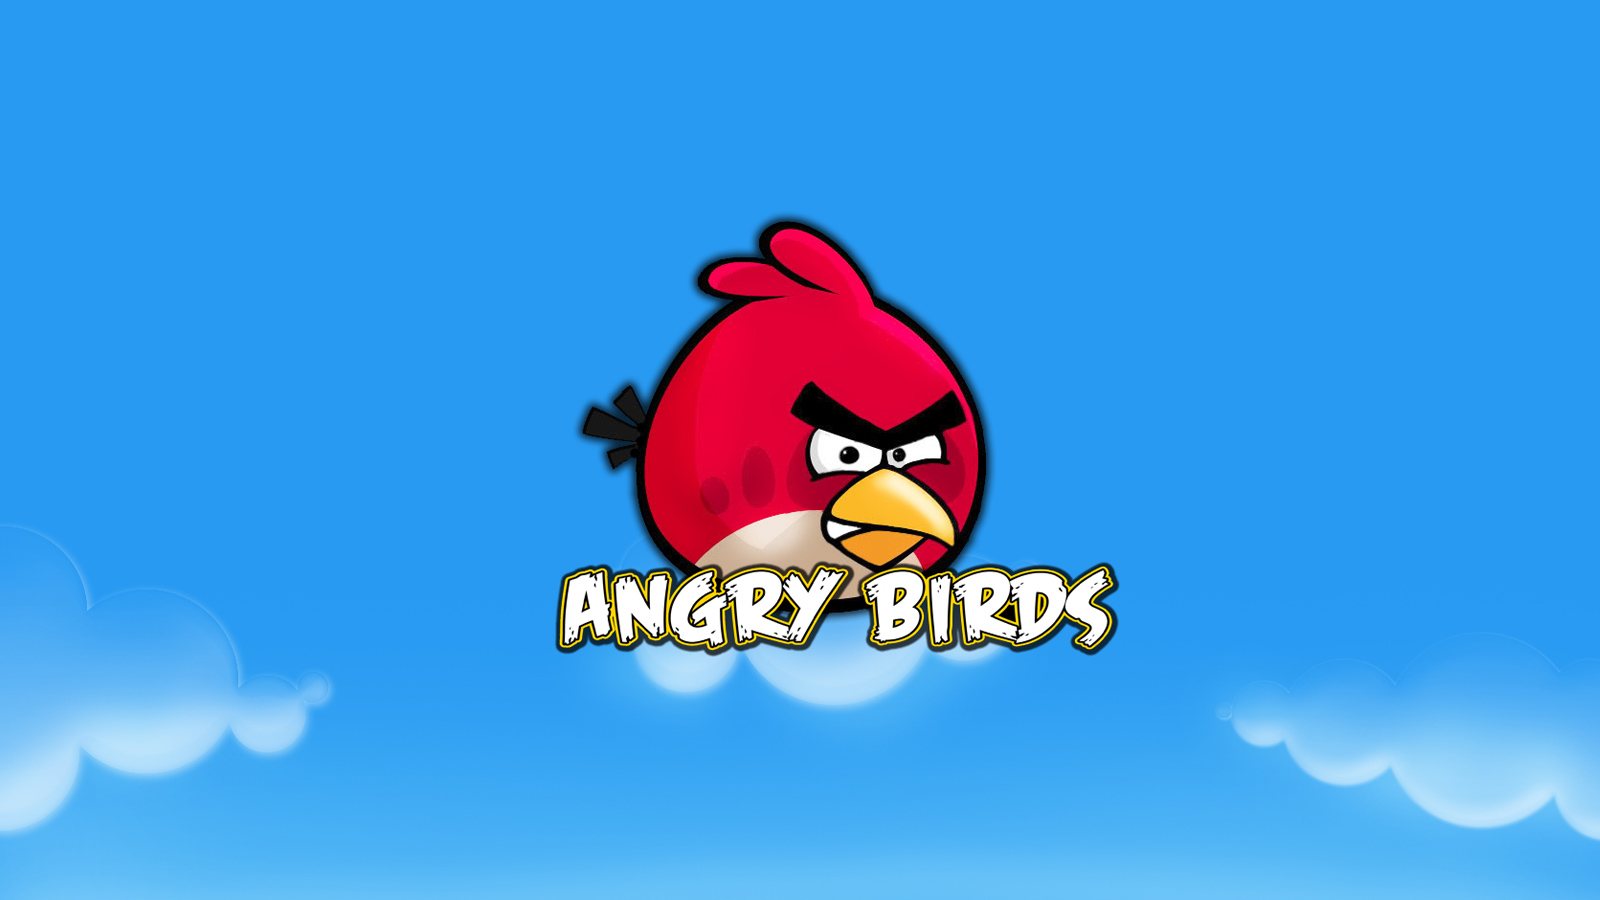 Bueno Amigos Hoy Les Traigo Unos Buenos Wallpaper De Angry Birds El